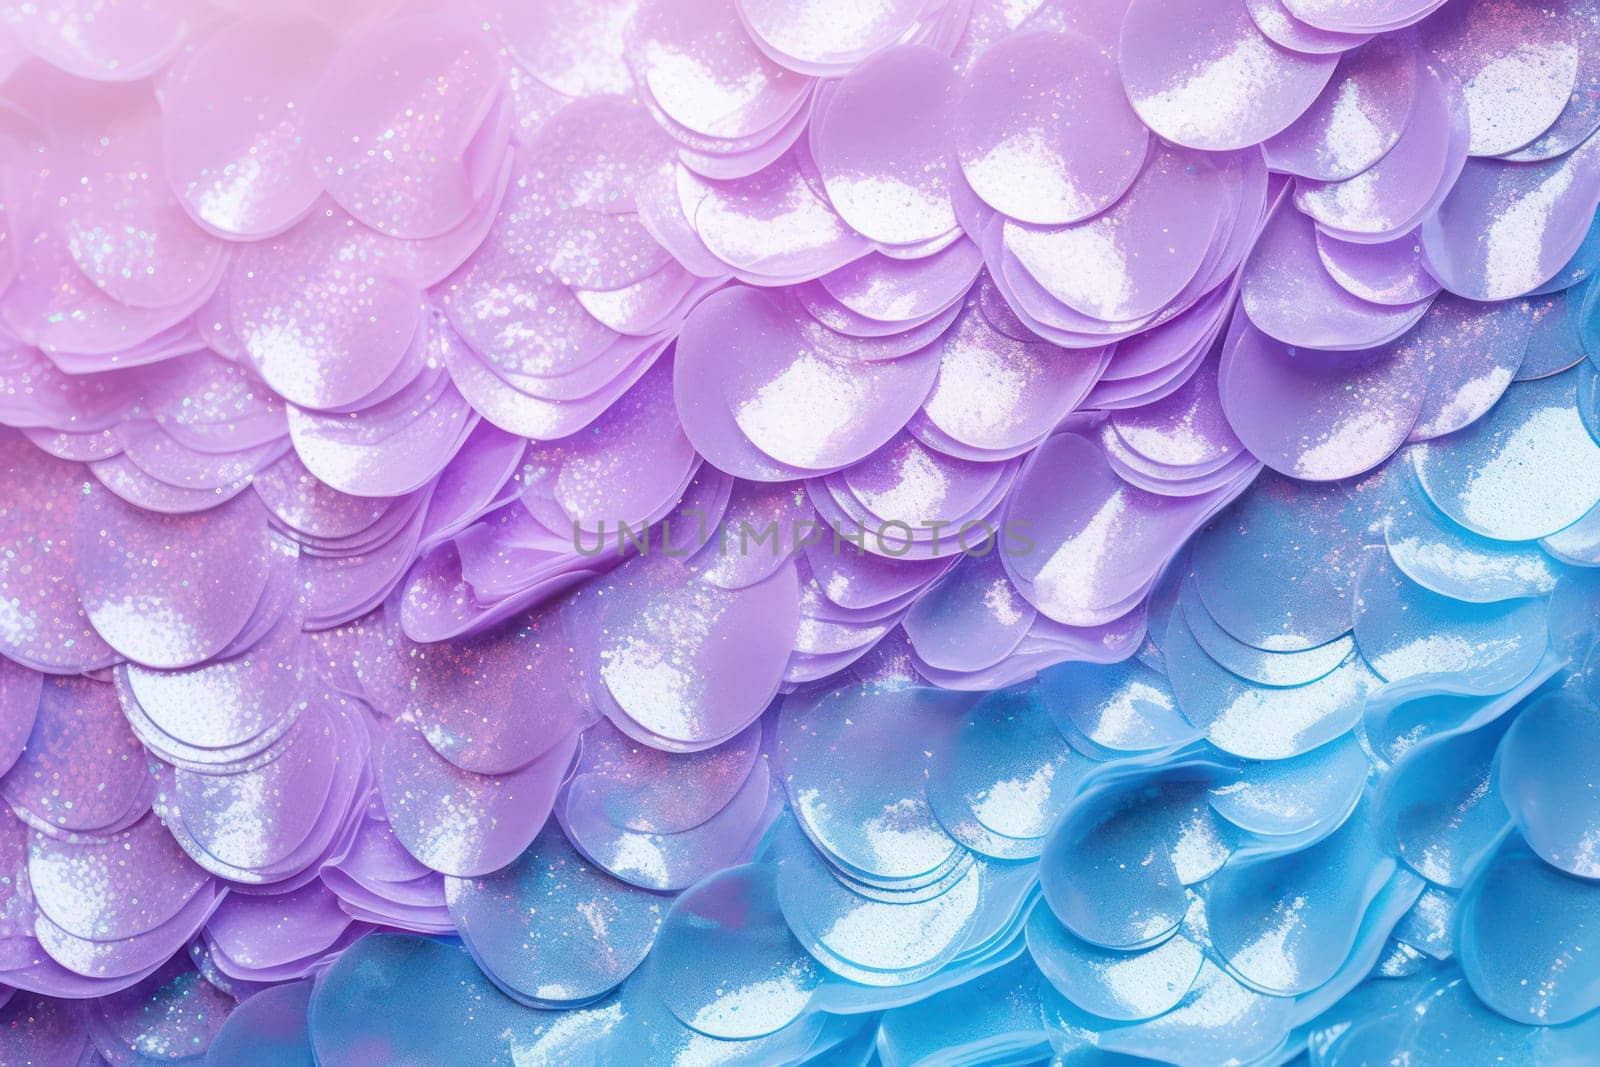 Mermaid Scales in Sparkling Pastels by ugguggu